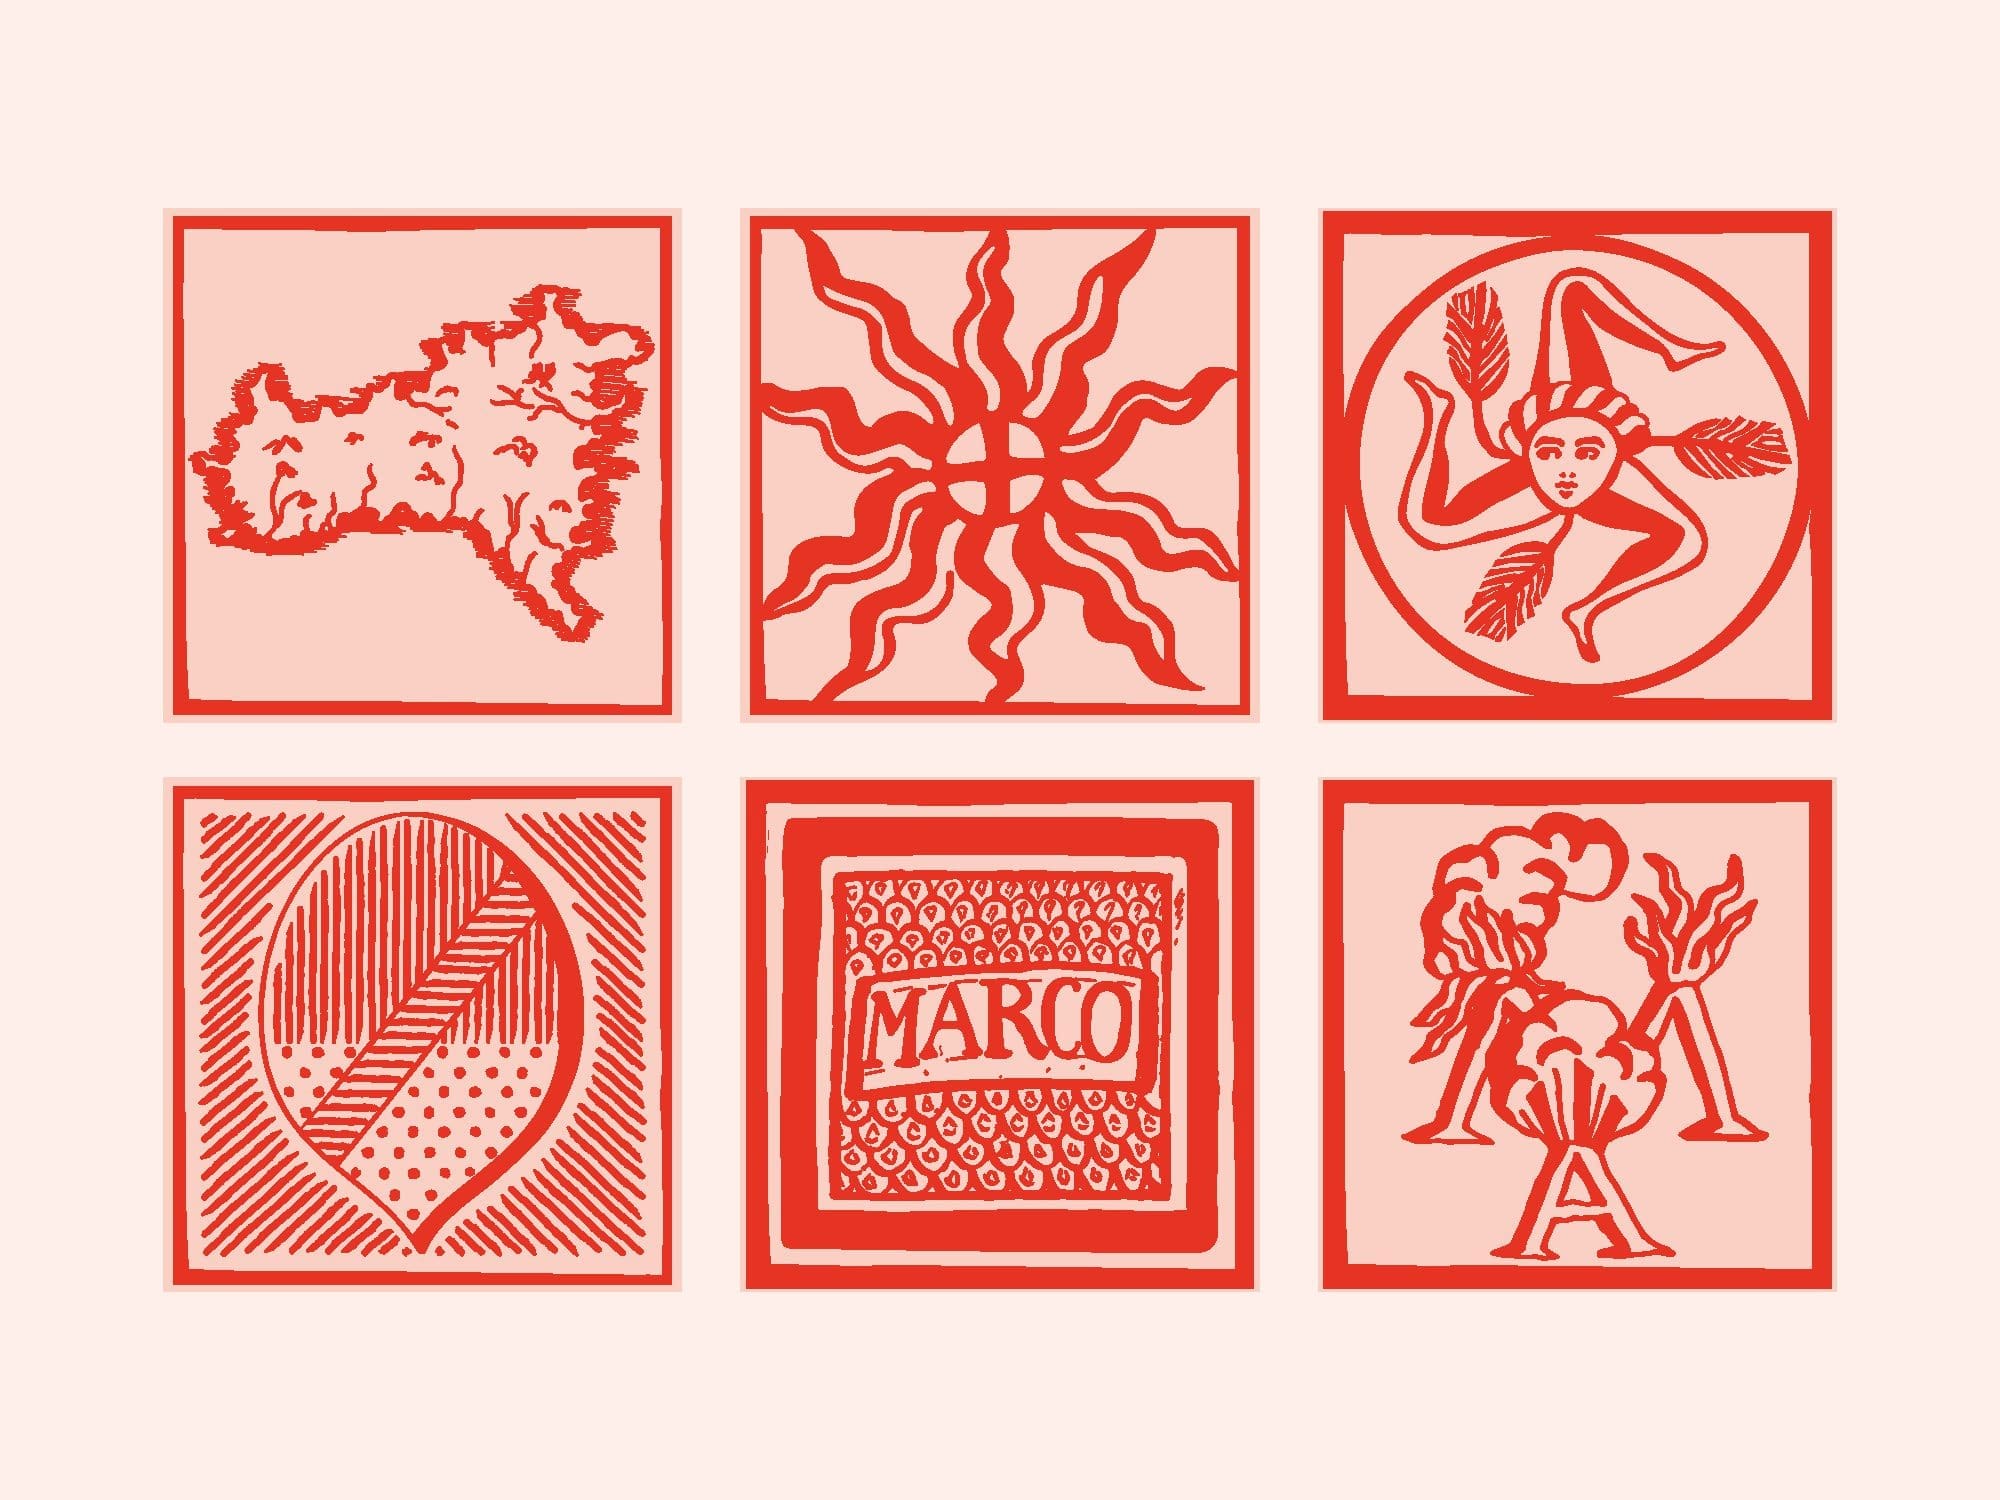 Ichetkar dessine des carreaux à la signification plus symbolique ; des carreaux qui évoquent la Sicile, la carte, la triskèle, le blason de Patti ou les volcans